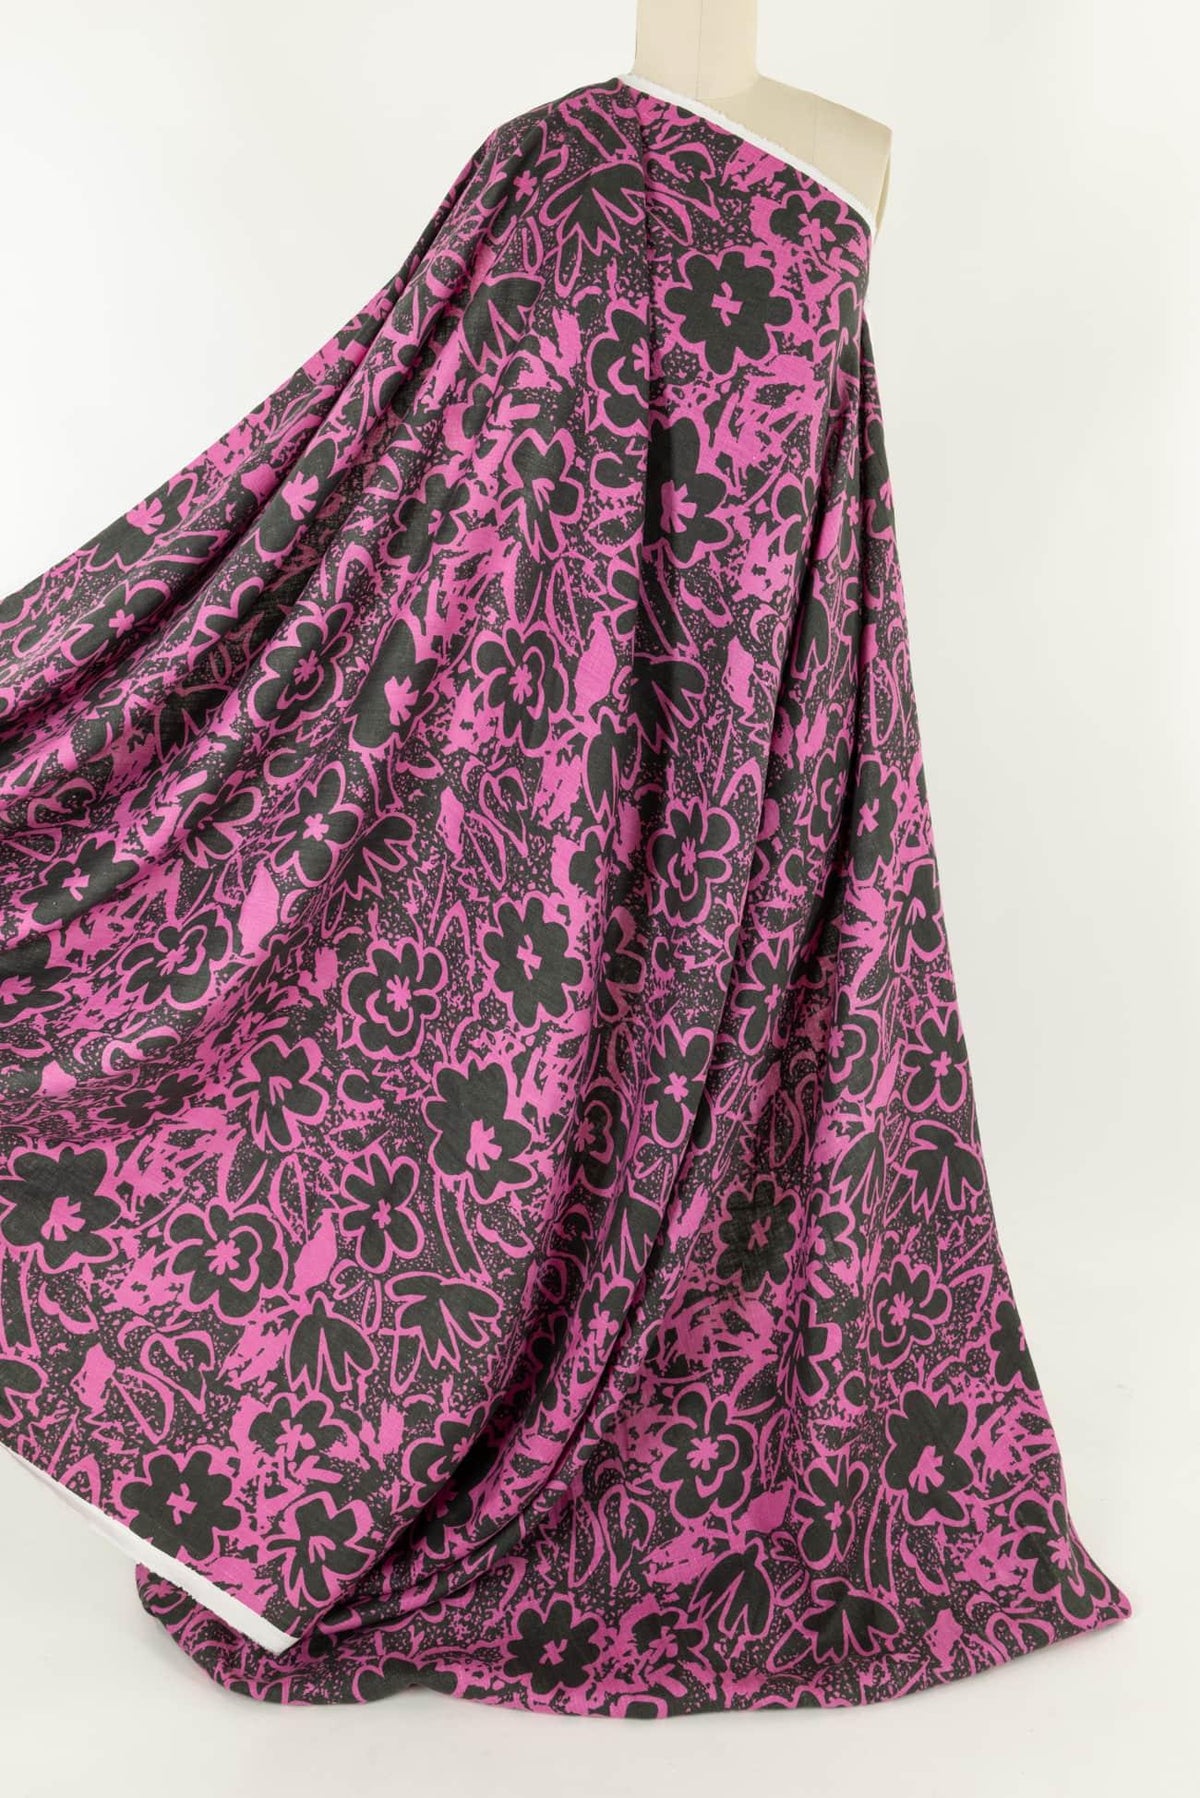 Fandango Linen Woven - Marcy Tilton Fabrics